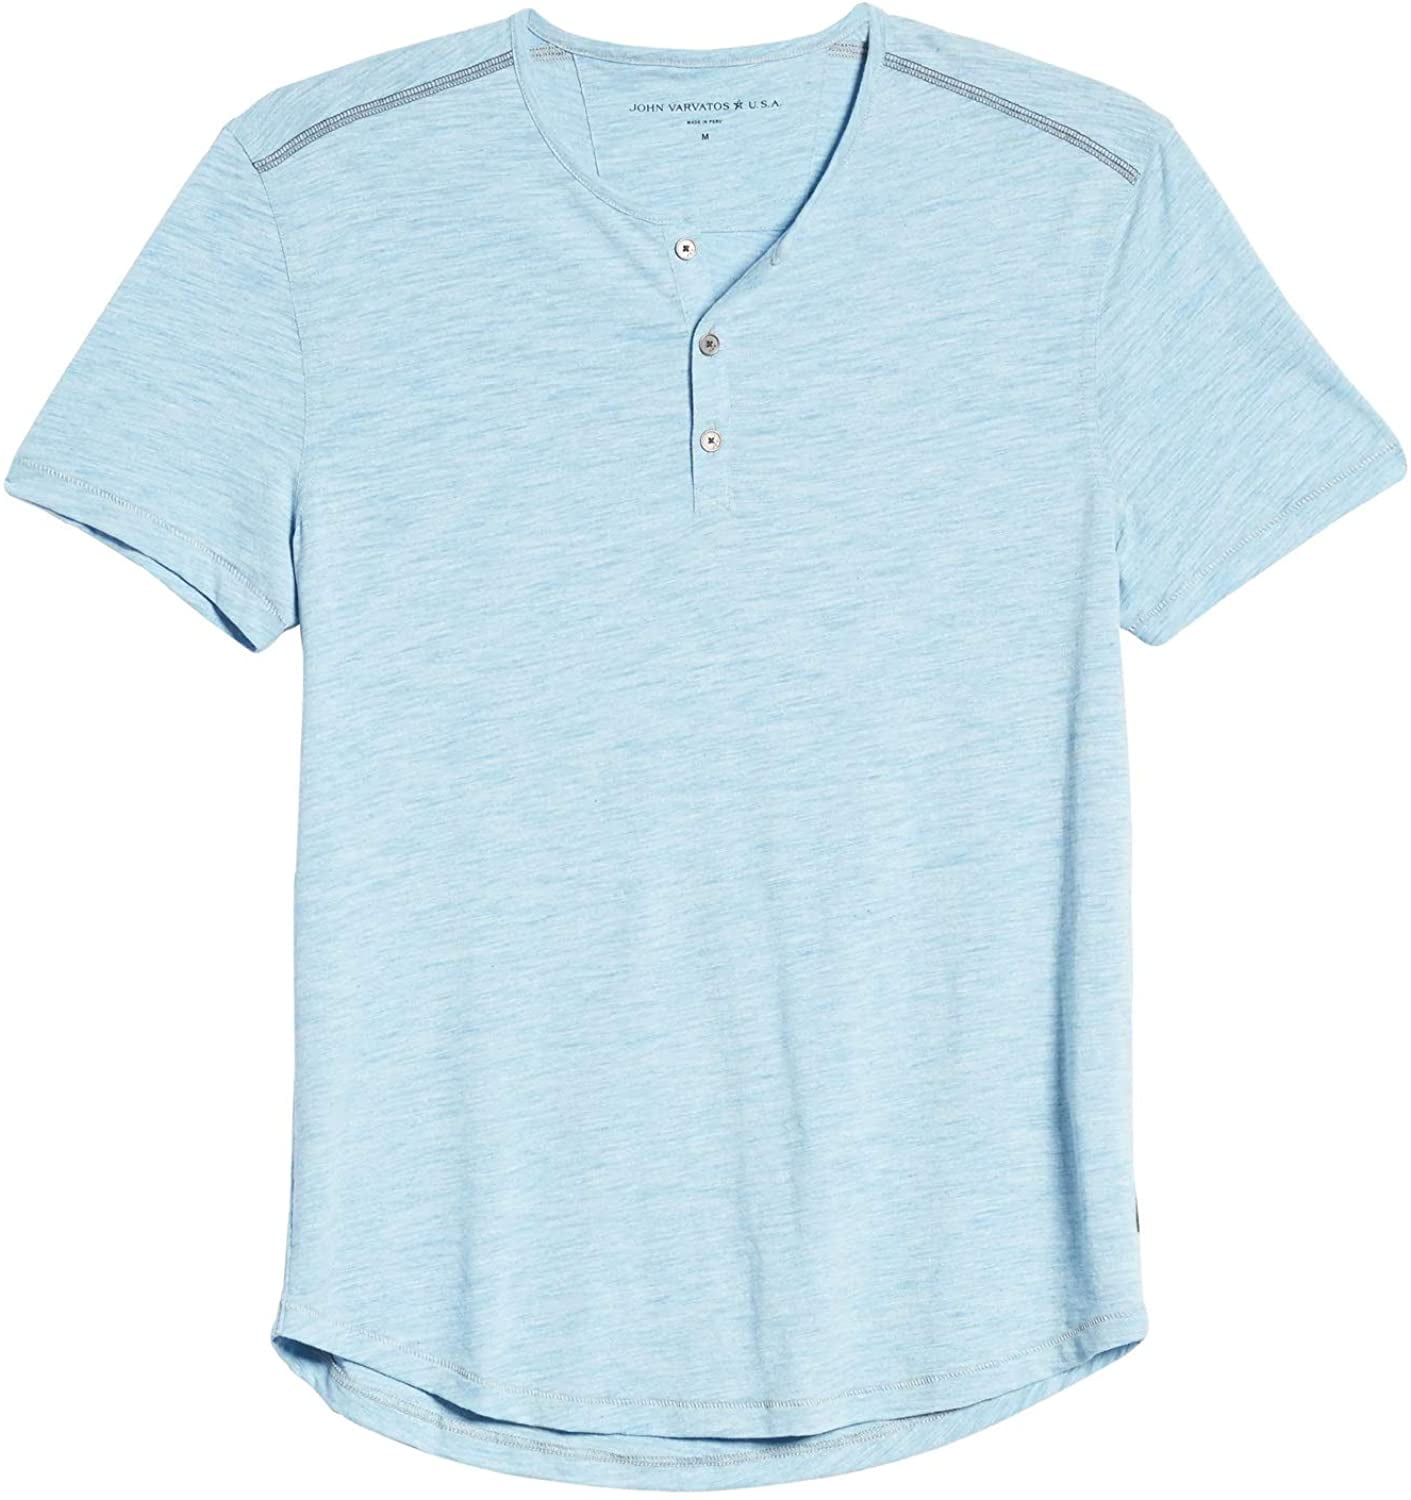 Details about   John Varvatos Star USA Men's Ryman Disperse Dye 3 Button Henley Shirt Sapphire 